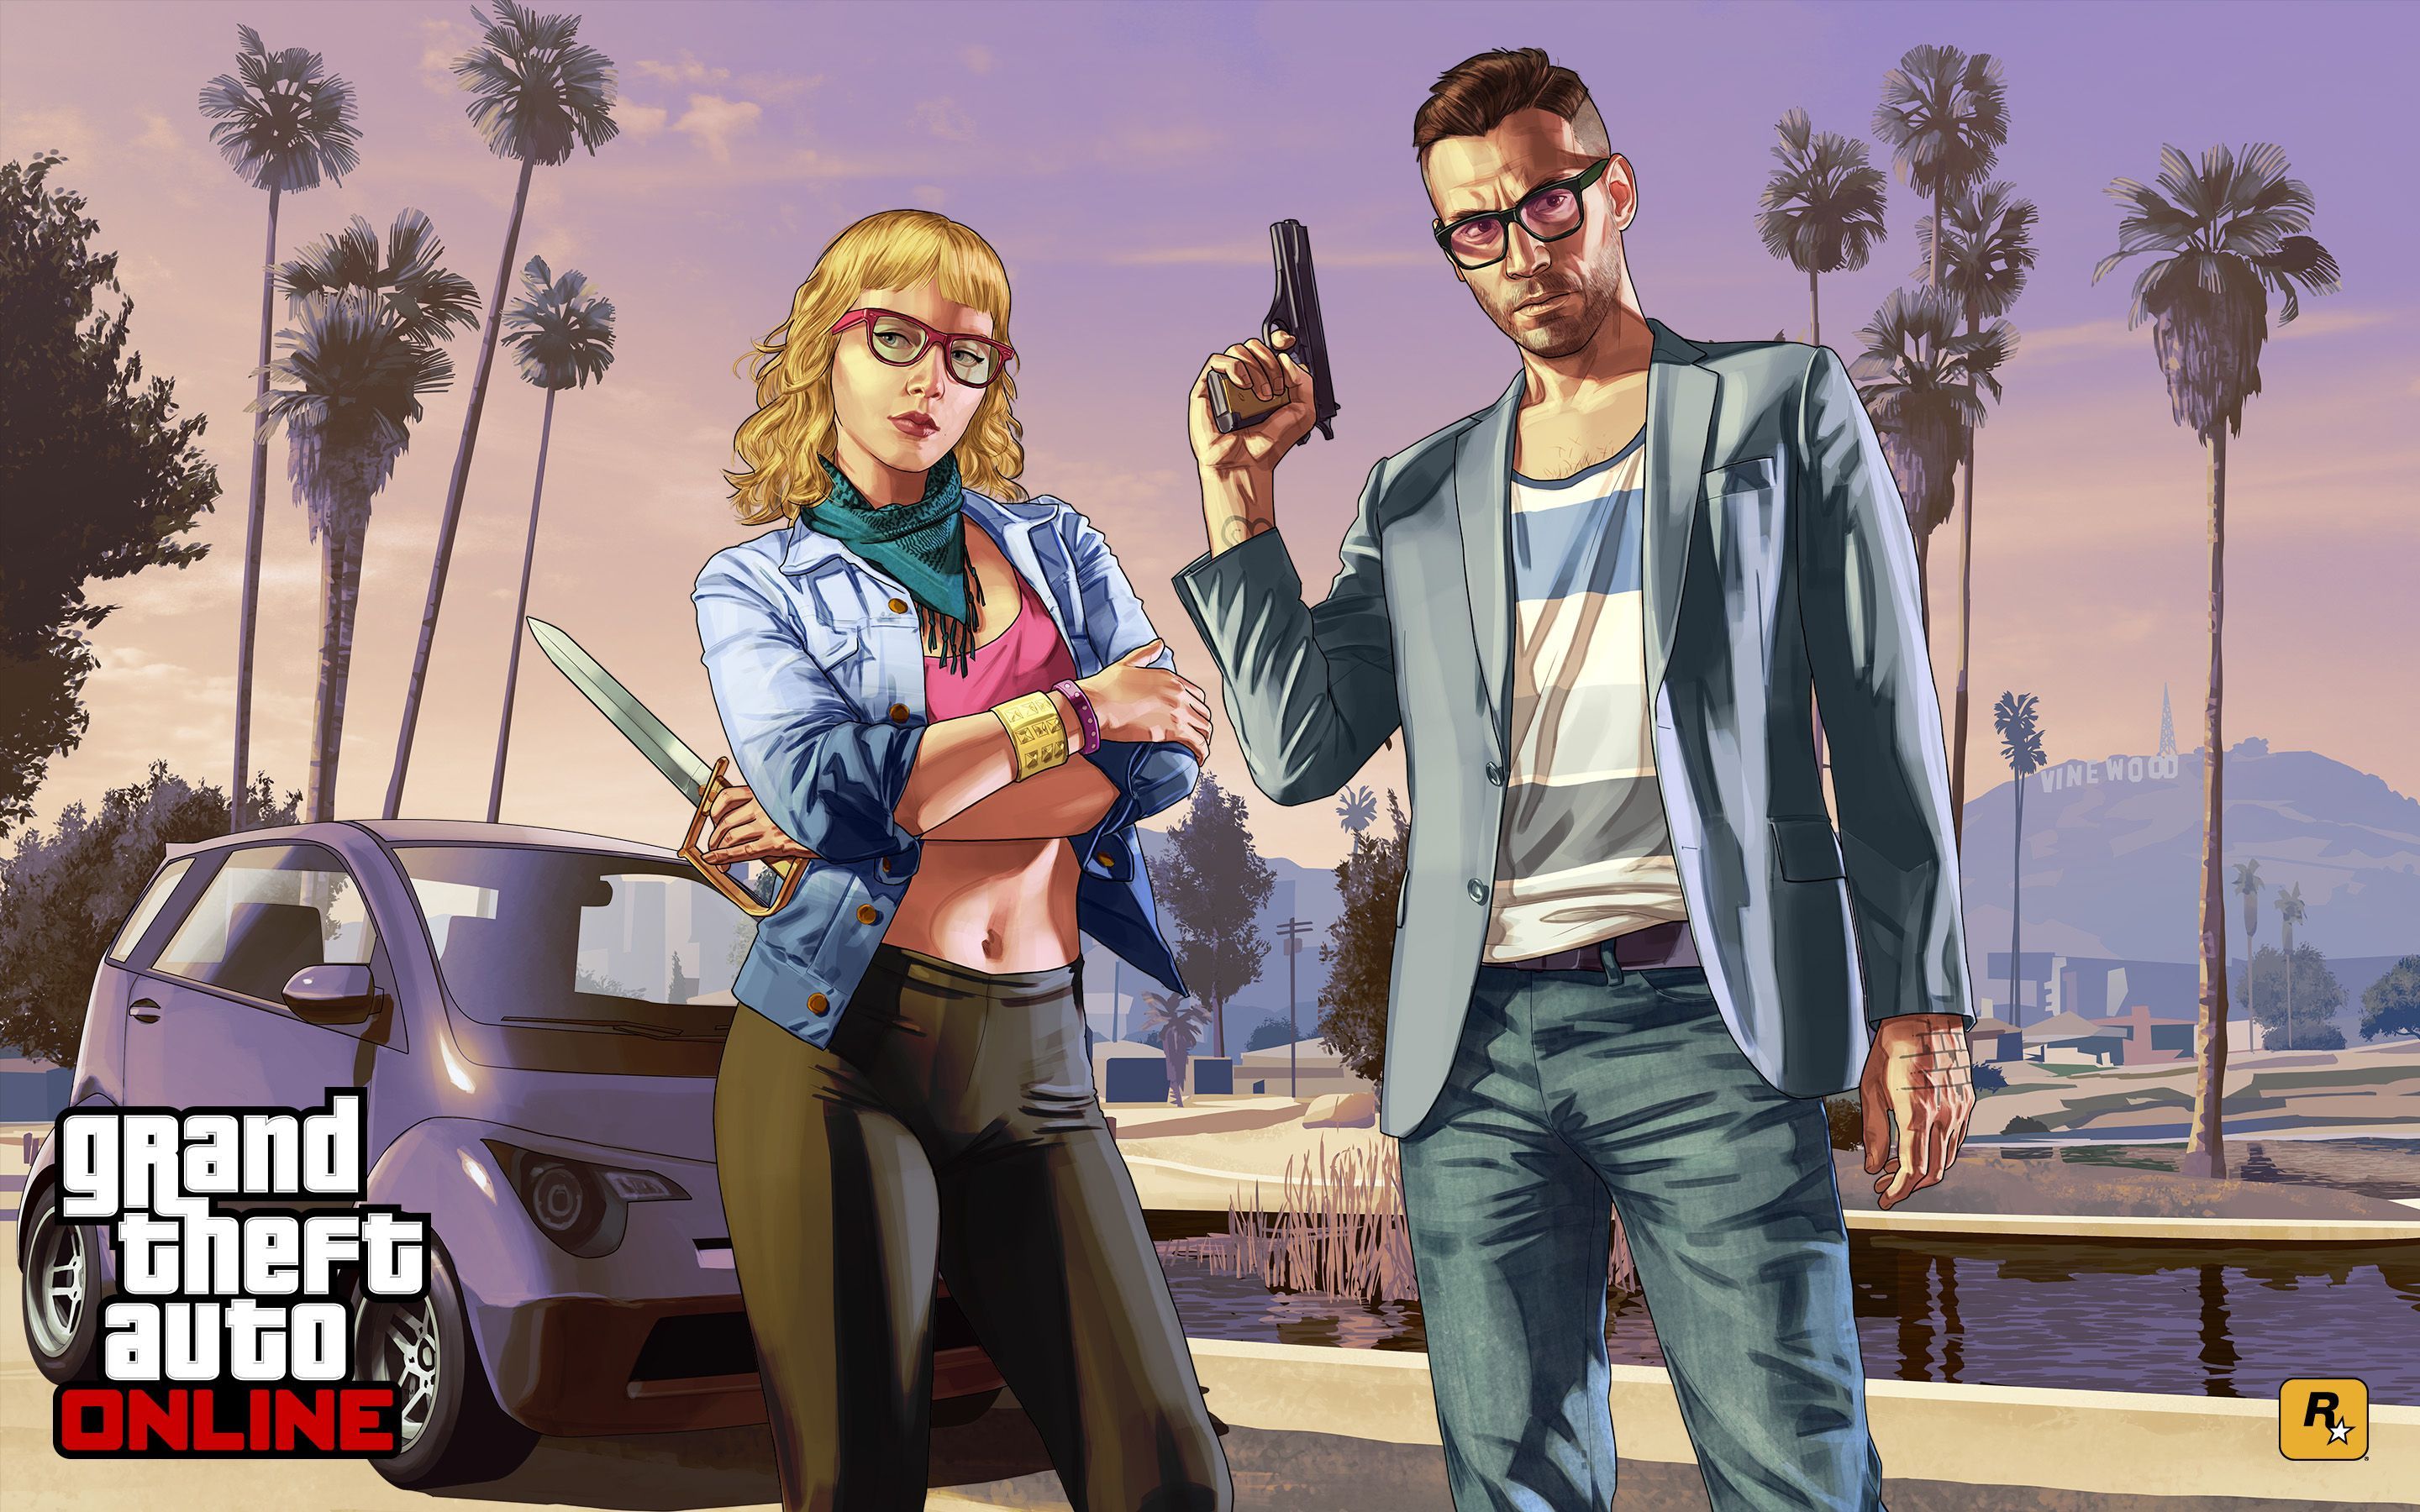 Grand Theft Auto Online Wallpaper Photo. Arte final fantasy, Ilustrações, Personagens femininos